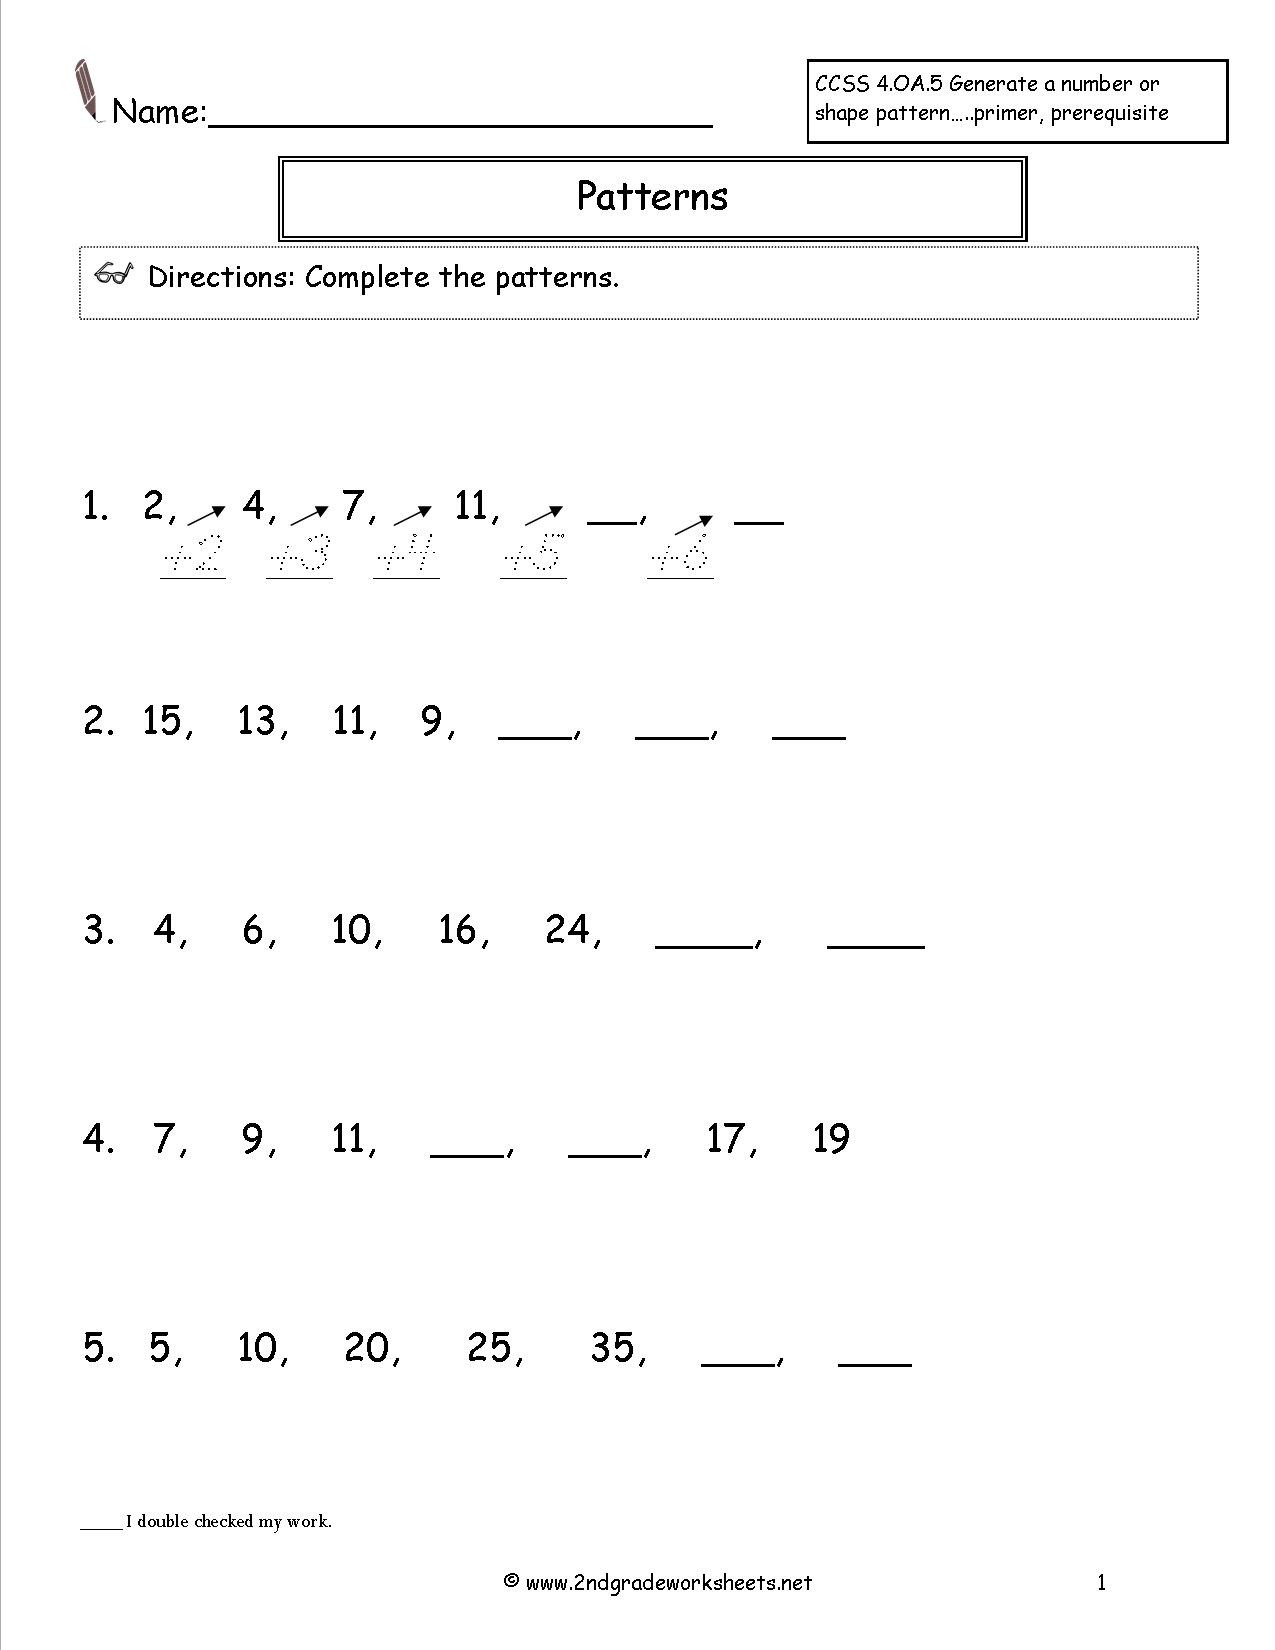 Shapes Worksheets 2nd Grade Number and Shape Patterns Worksheets